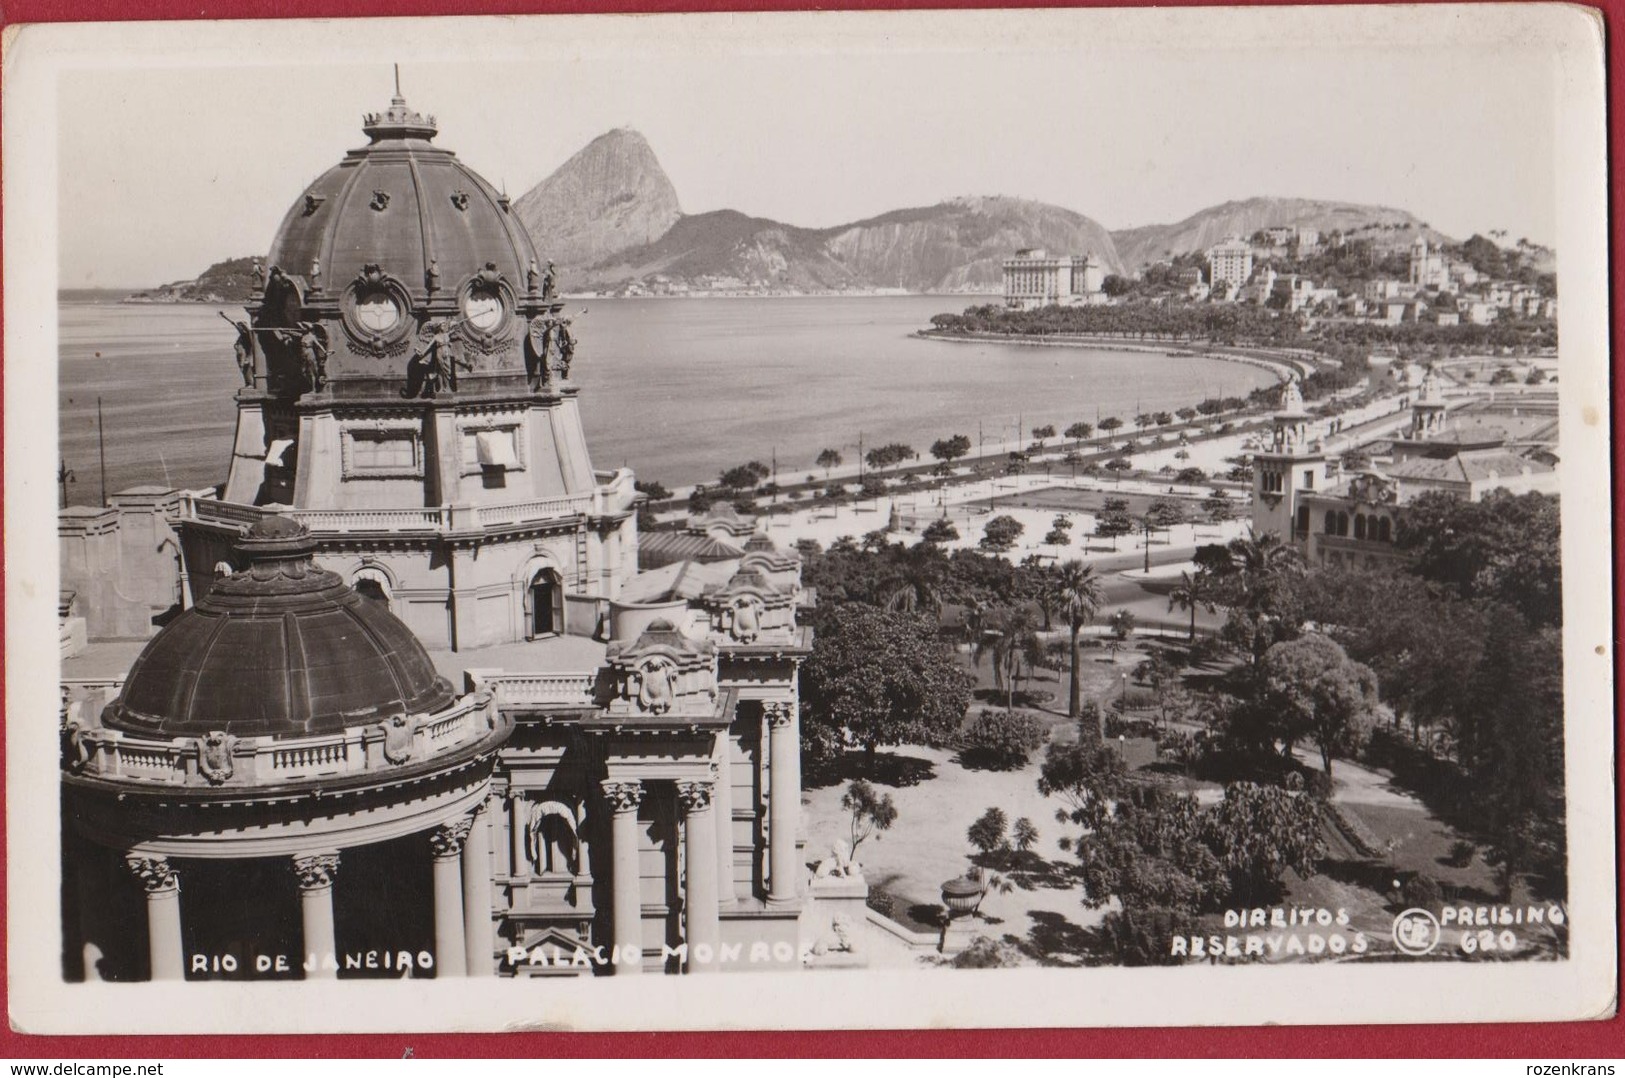 Bresil Brazil Brasil Rio De Janeiro - Palacio Monroe Photo Card Presising 620 Brazilie - Rio De Janeiro